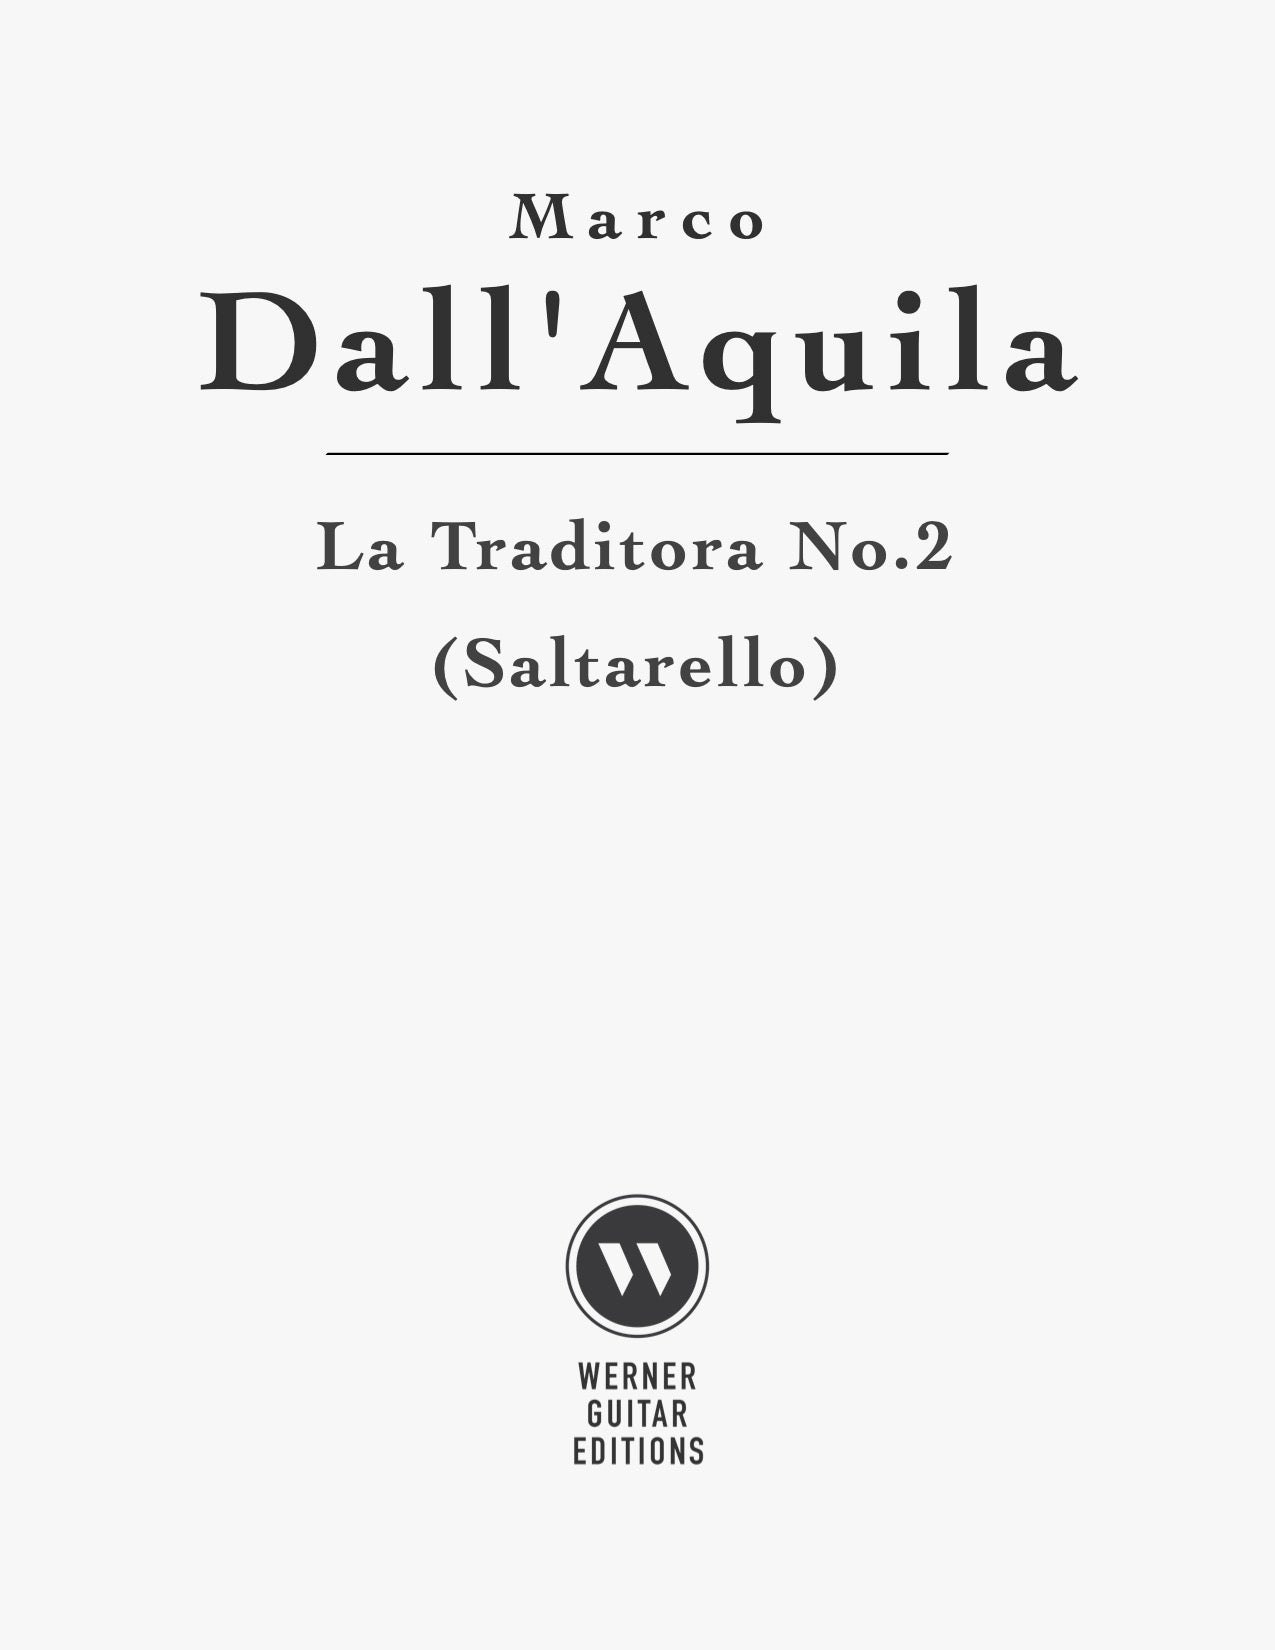 La Traditora, Saltarello by Marco Dall'Aquila (PDF Sheet Music)